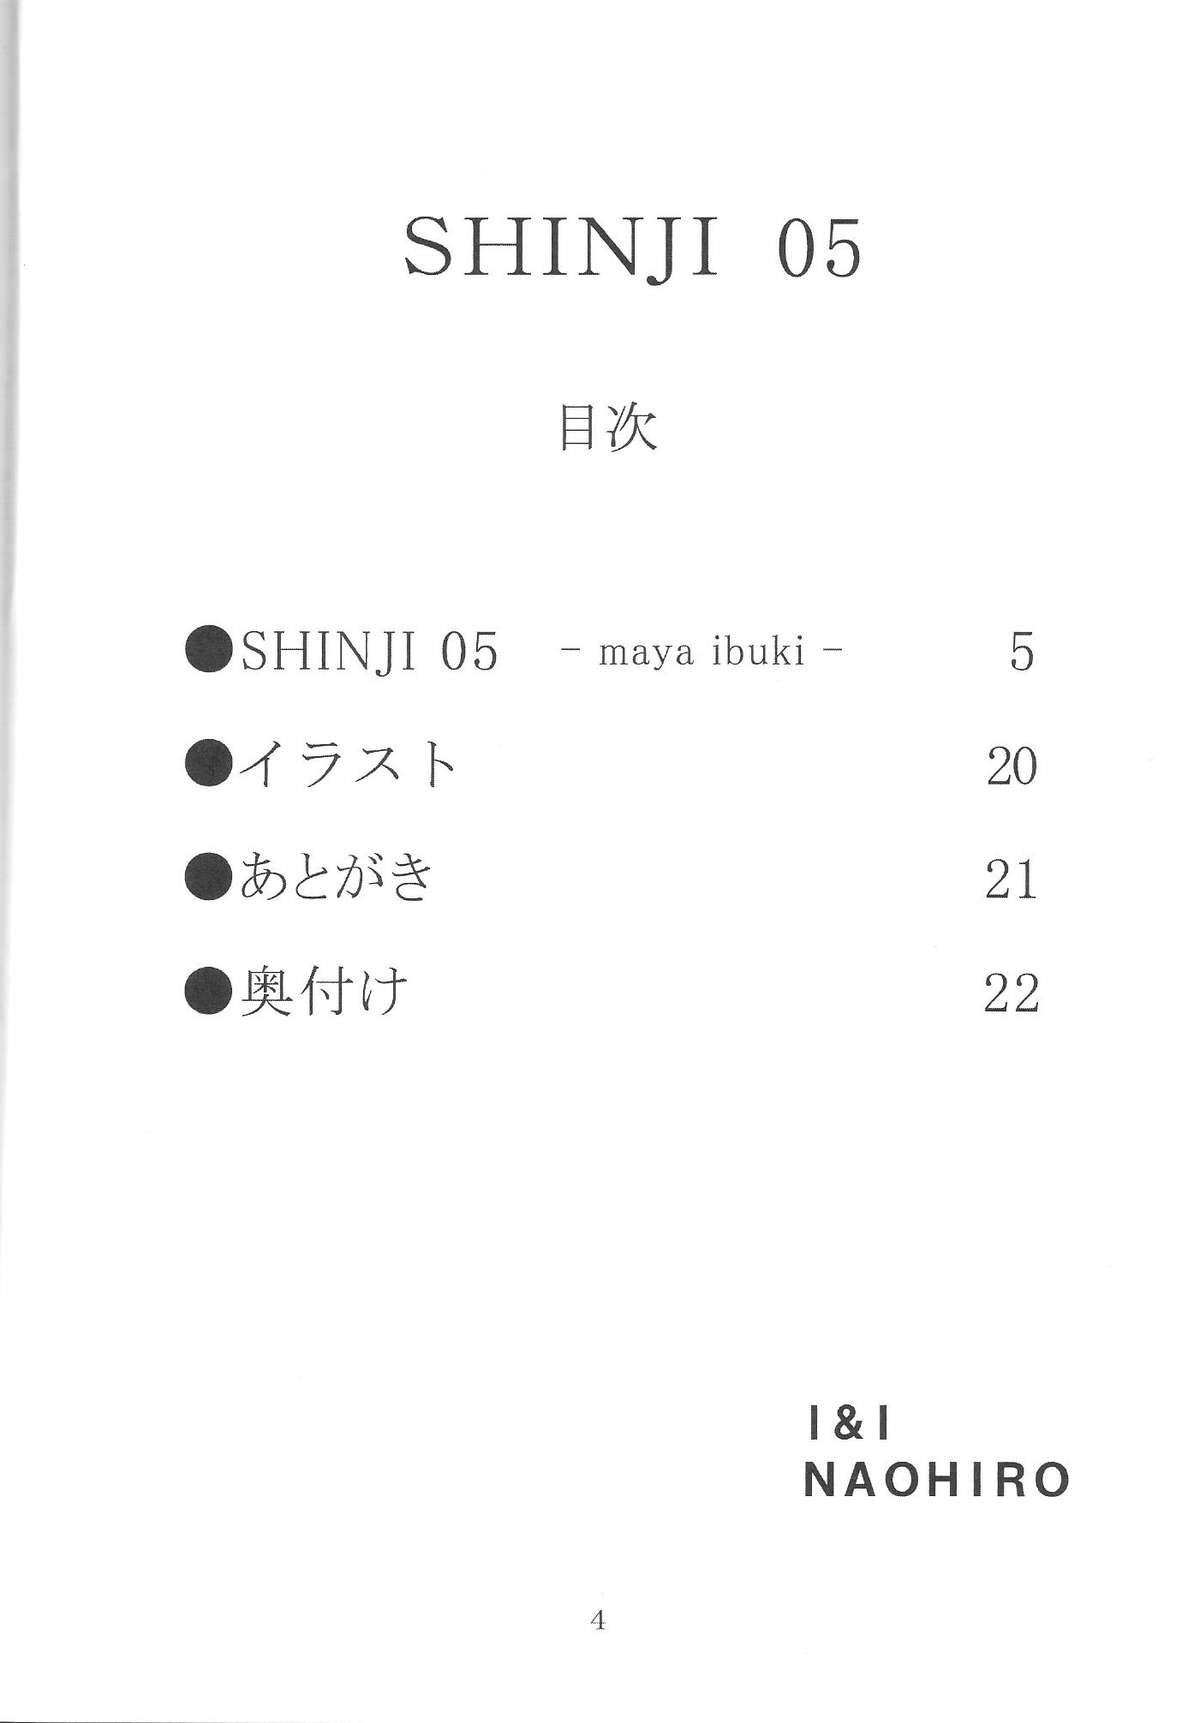 (サンクリ42) [I&I (Naohiro)] SHINJI 05 - maya ibuki (新世紀エヴァンゲリオン)